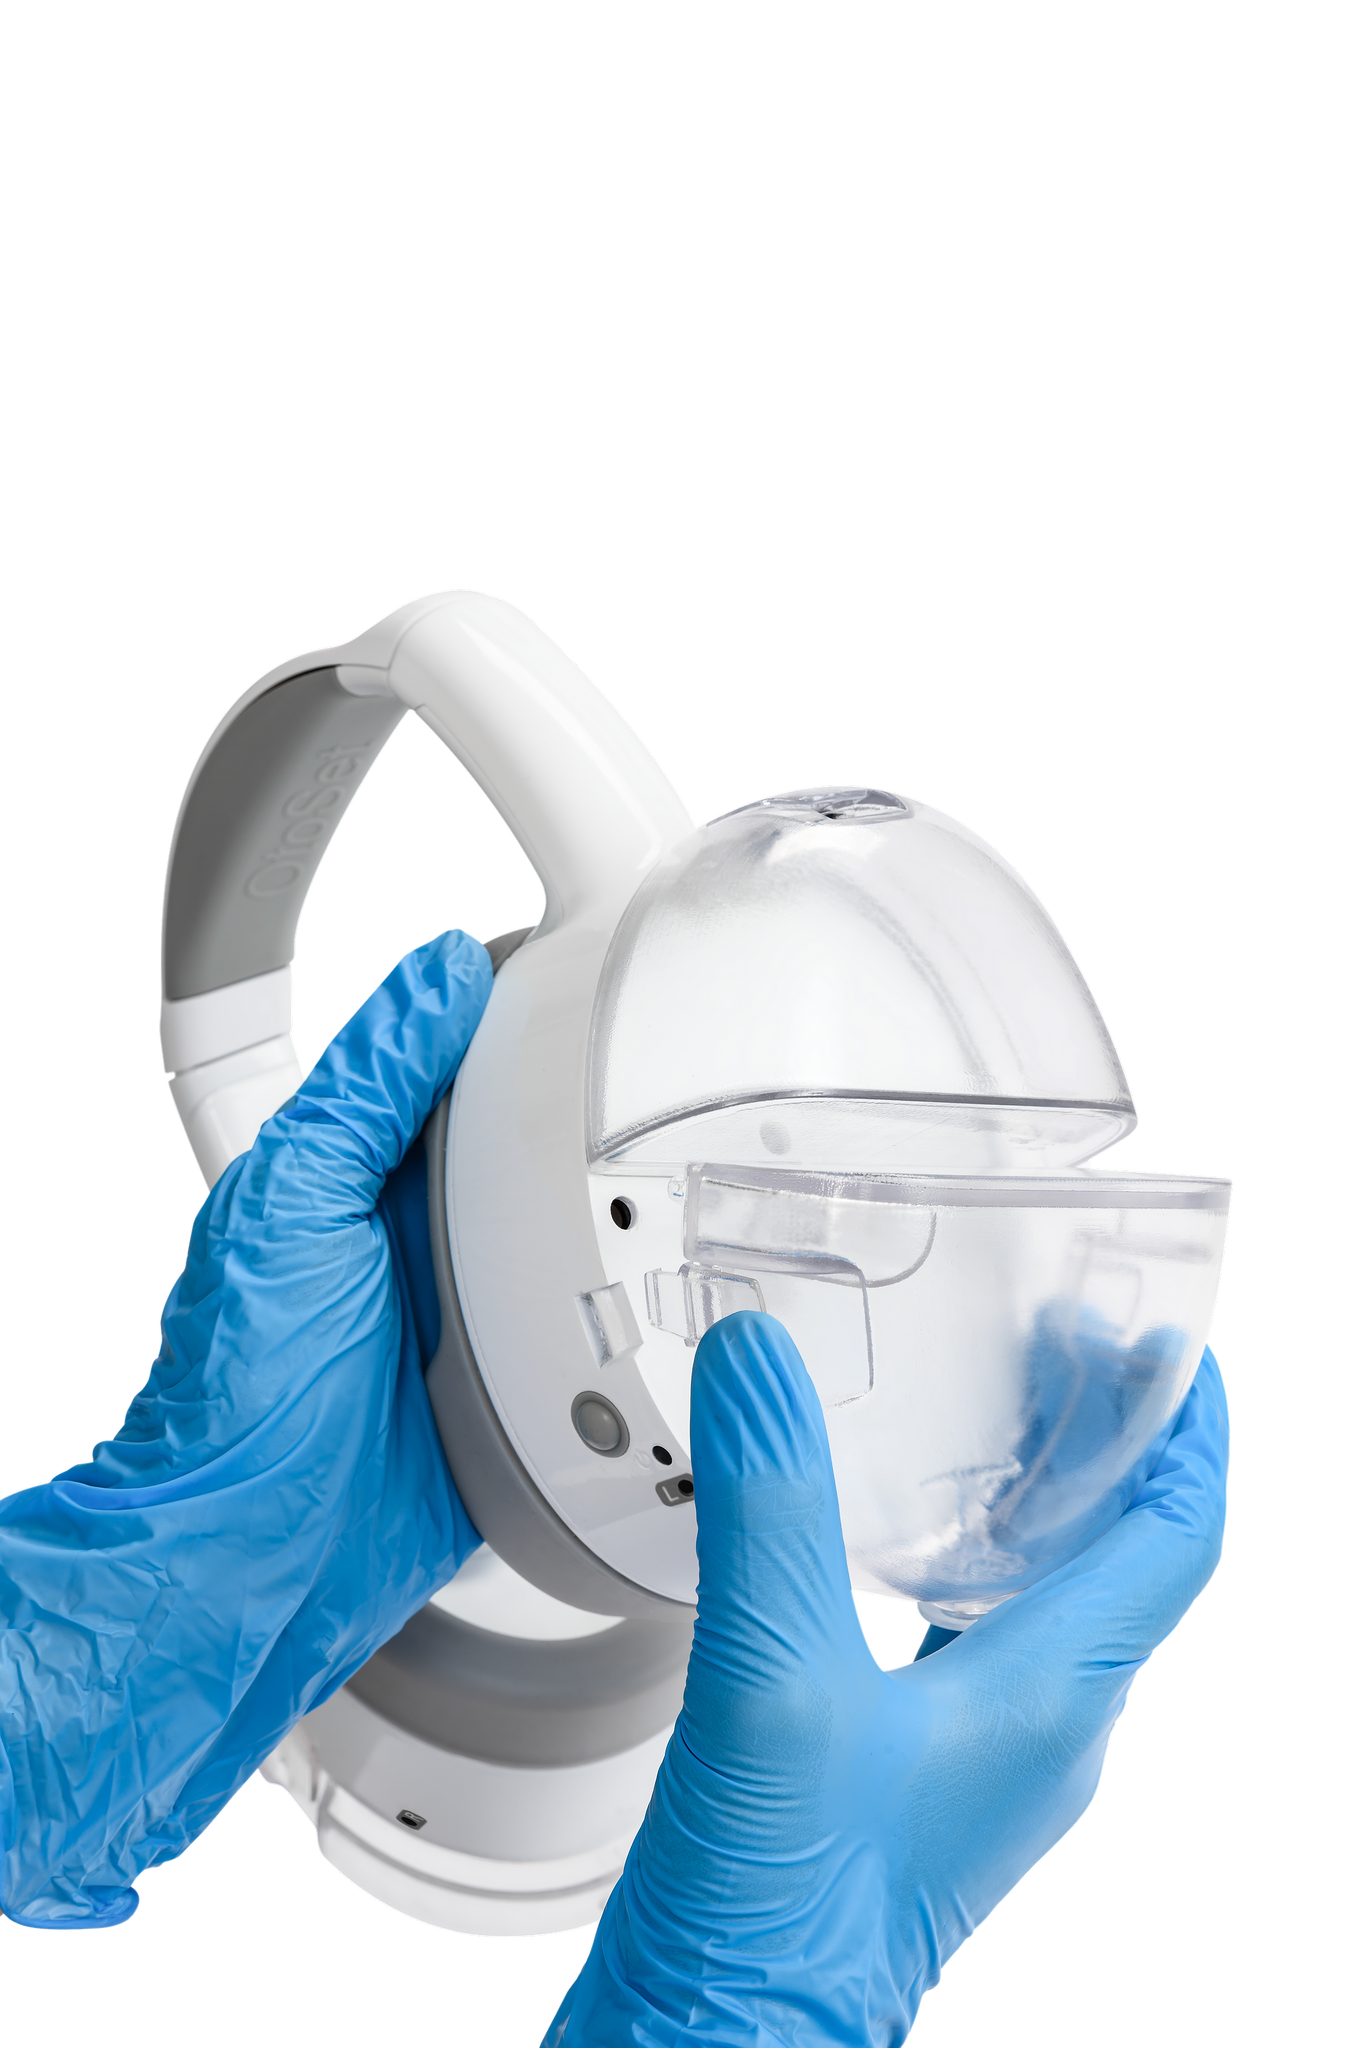 Le dispositif de nettoyage automatique des oreilles OtoSet est